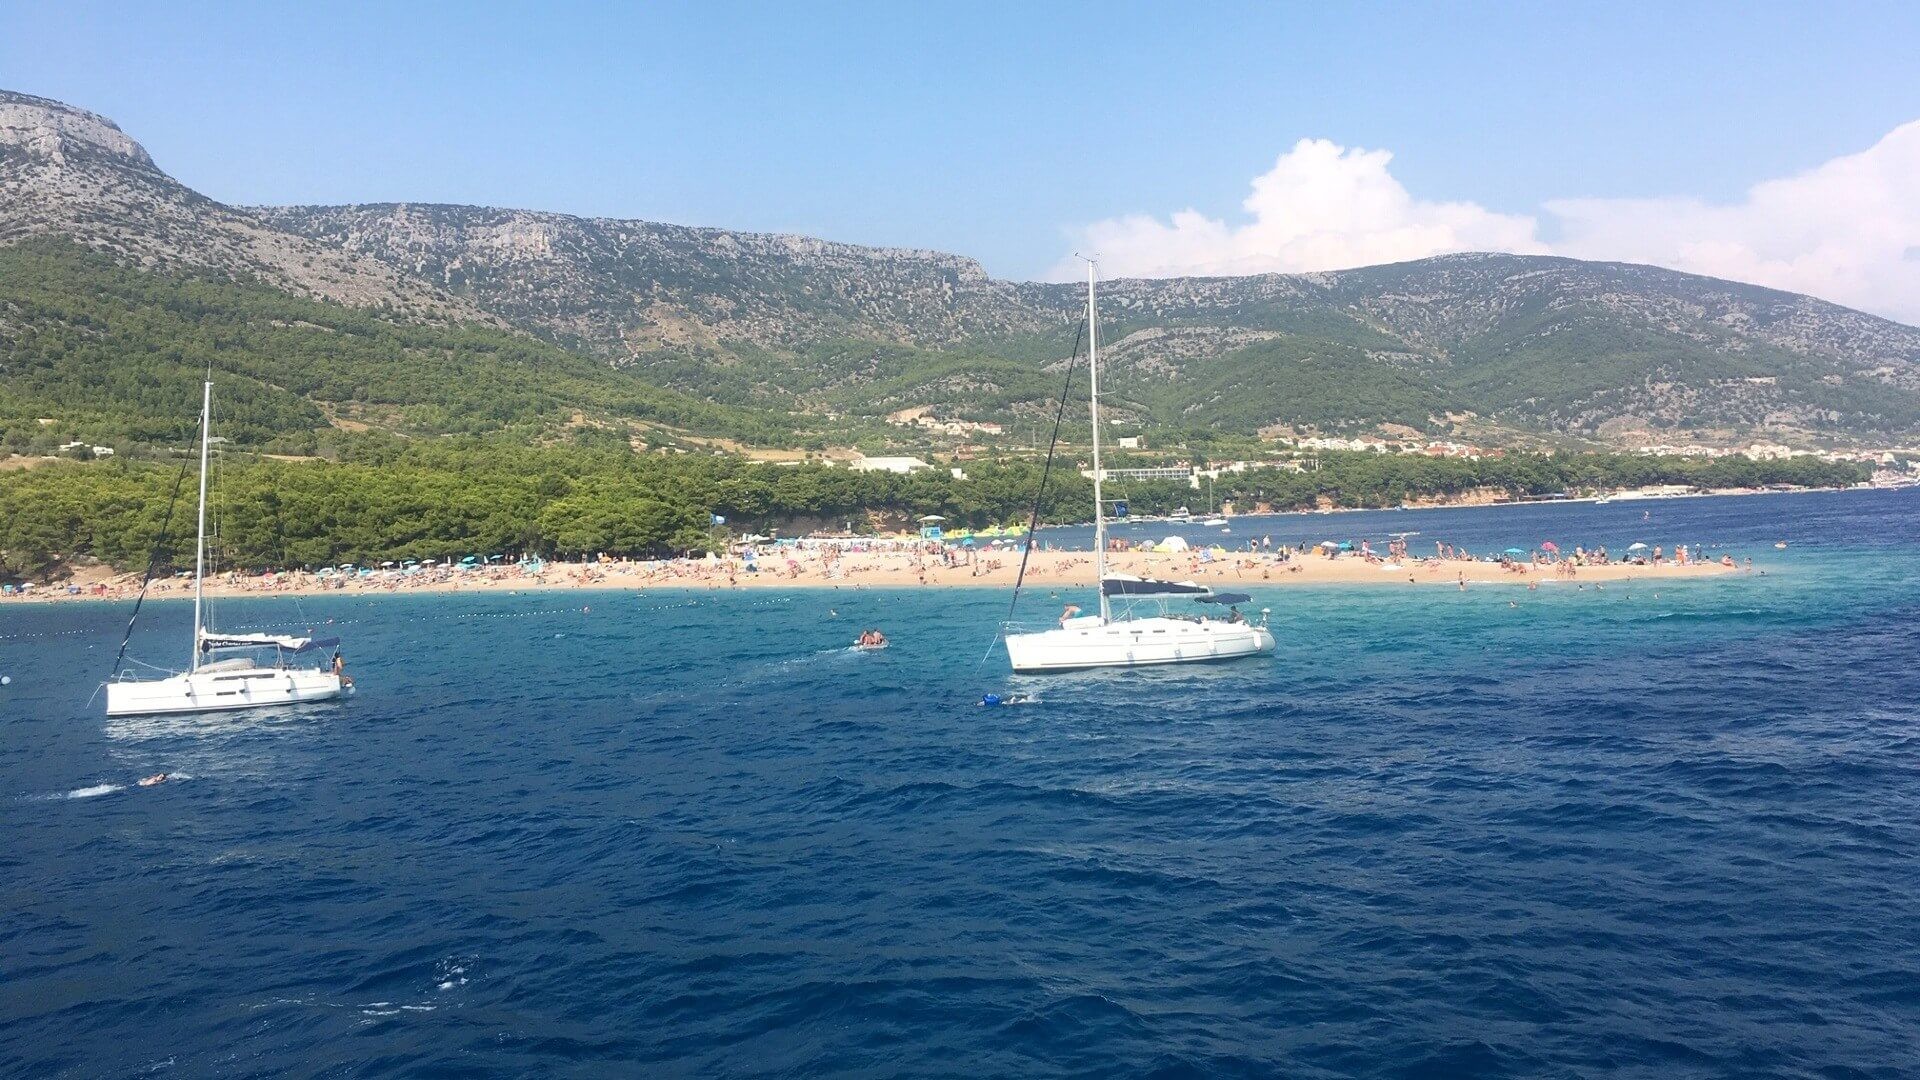 Magical One Week Croatia Cruise Experience - Part I